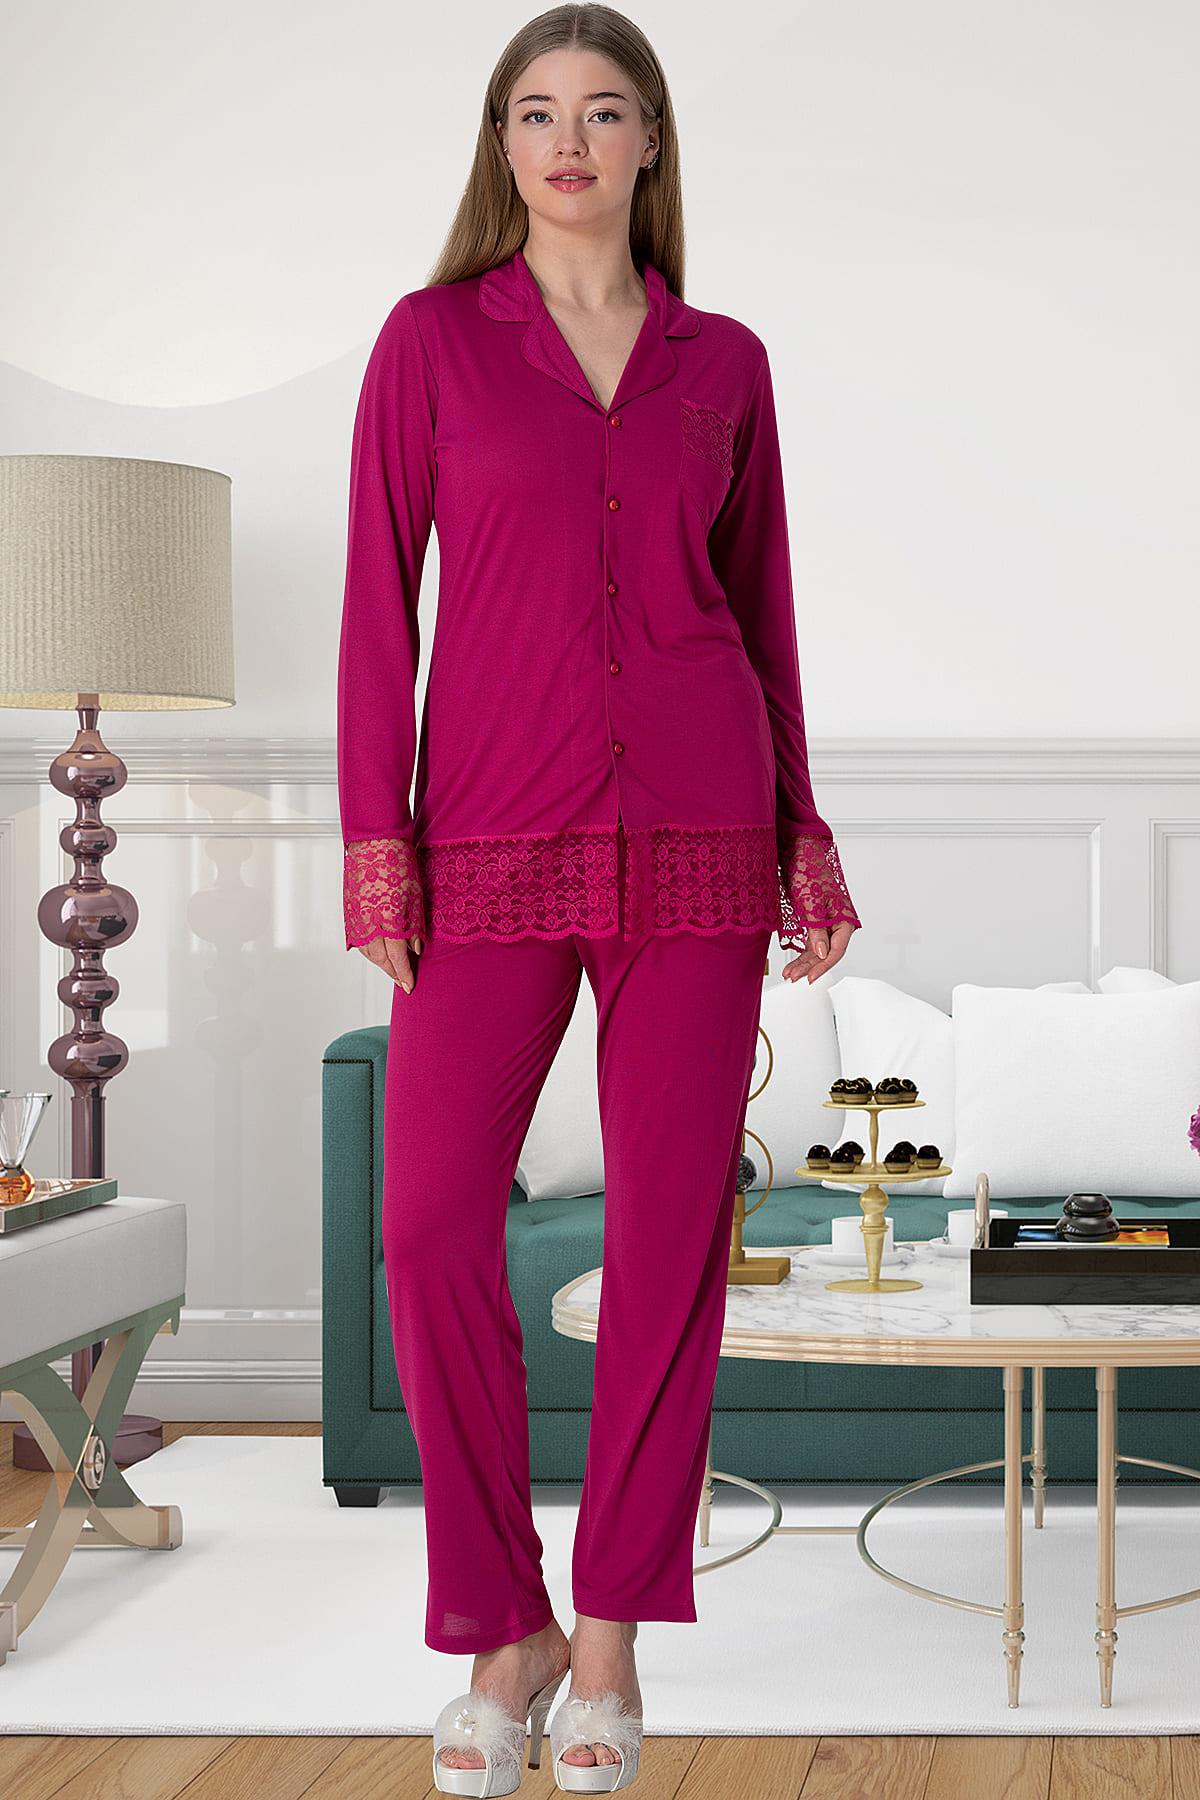 Shopymommy 5813 Sleeve And Skirt Lace Maternity & Nursing Pajamas Fuchsia